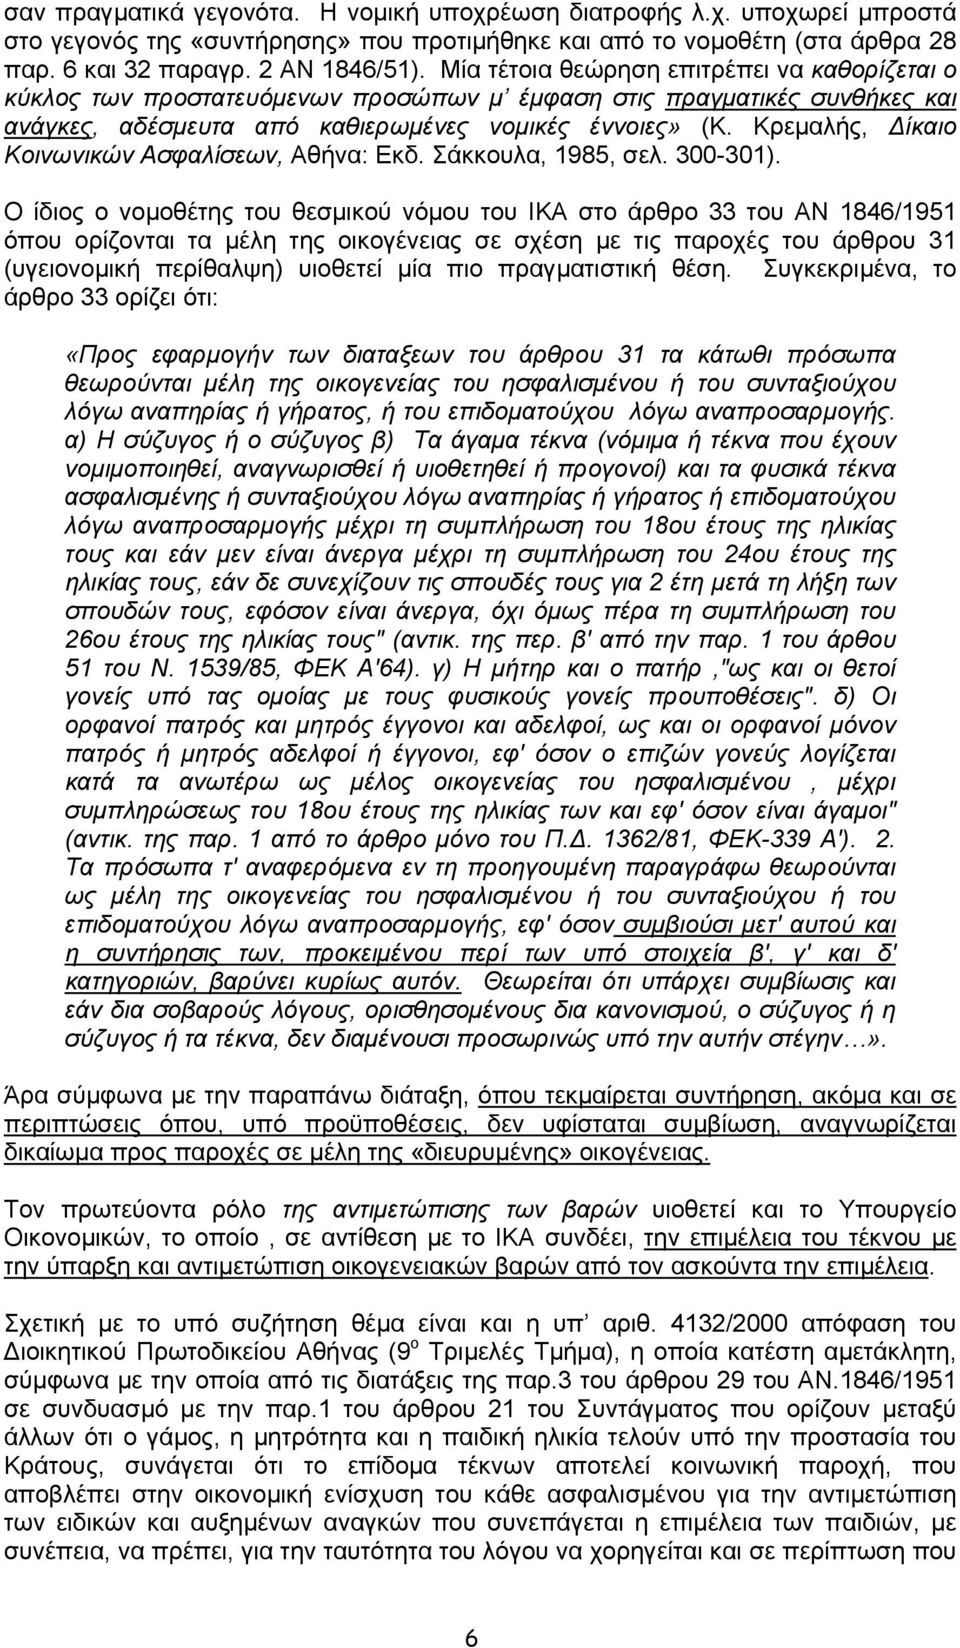 Κρεµαλής, ίκαιο Κοινωνικών Ασφαλίσεων, Αθήνα: Εκδ. Σάκκουλα, 1985, σελ. 300-301).